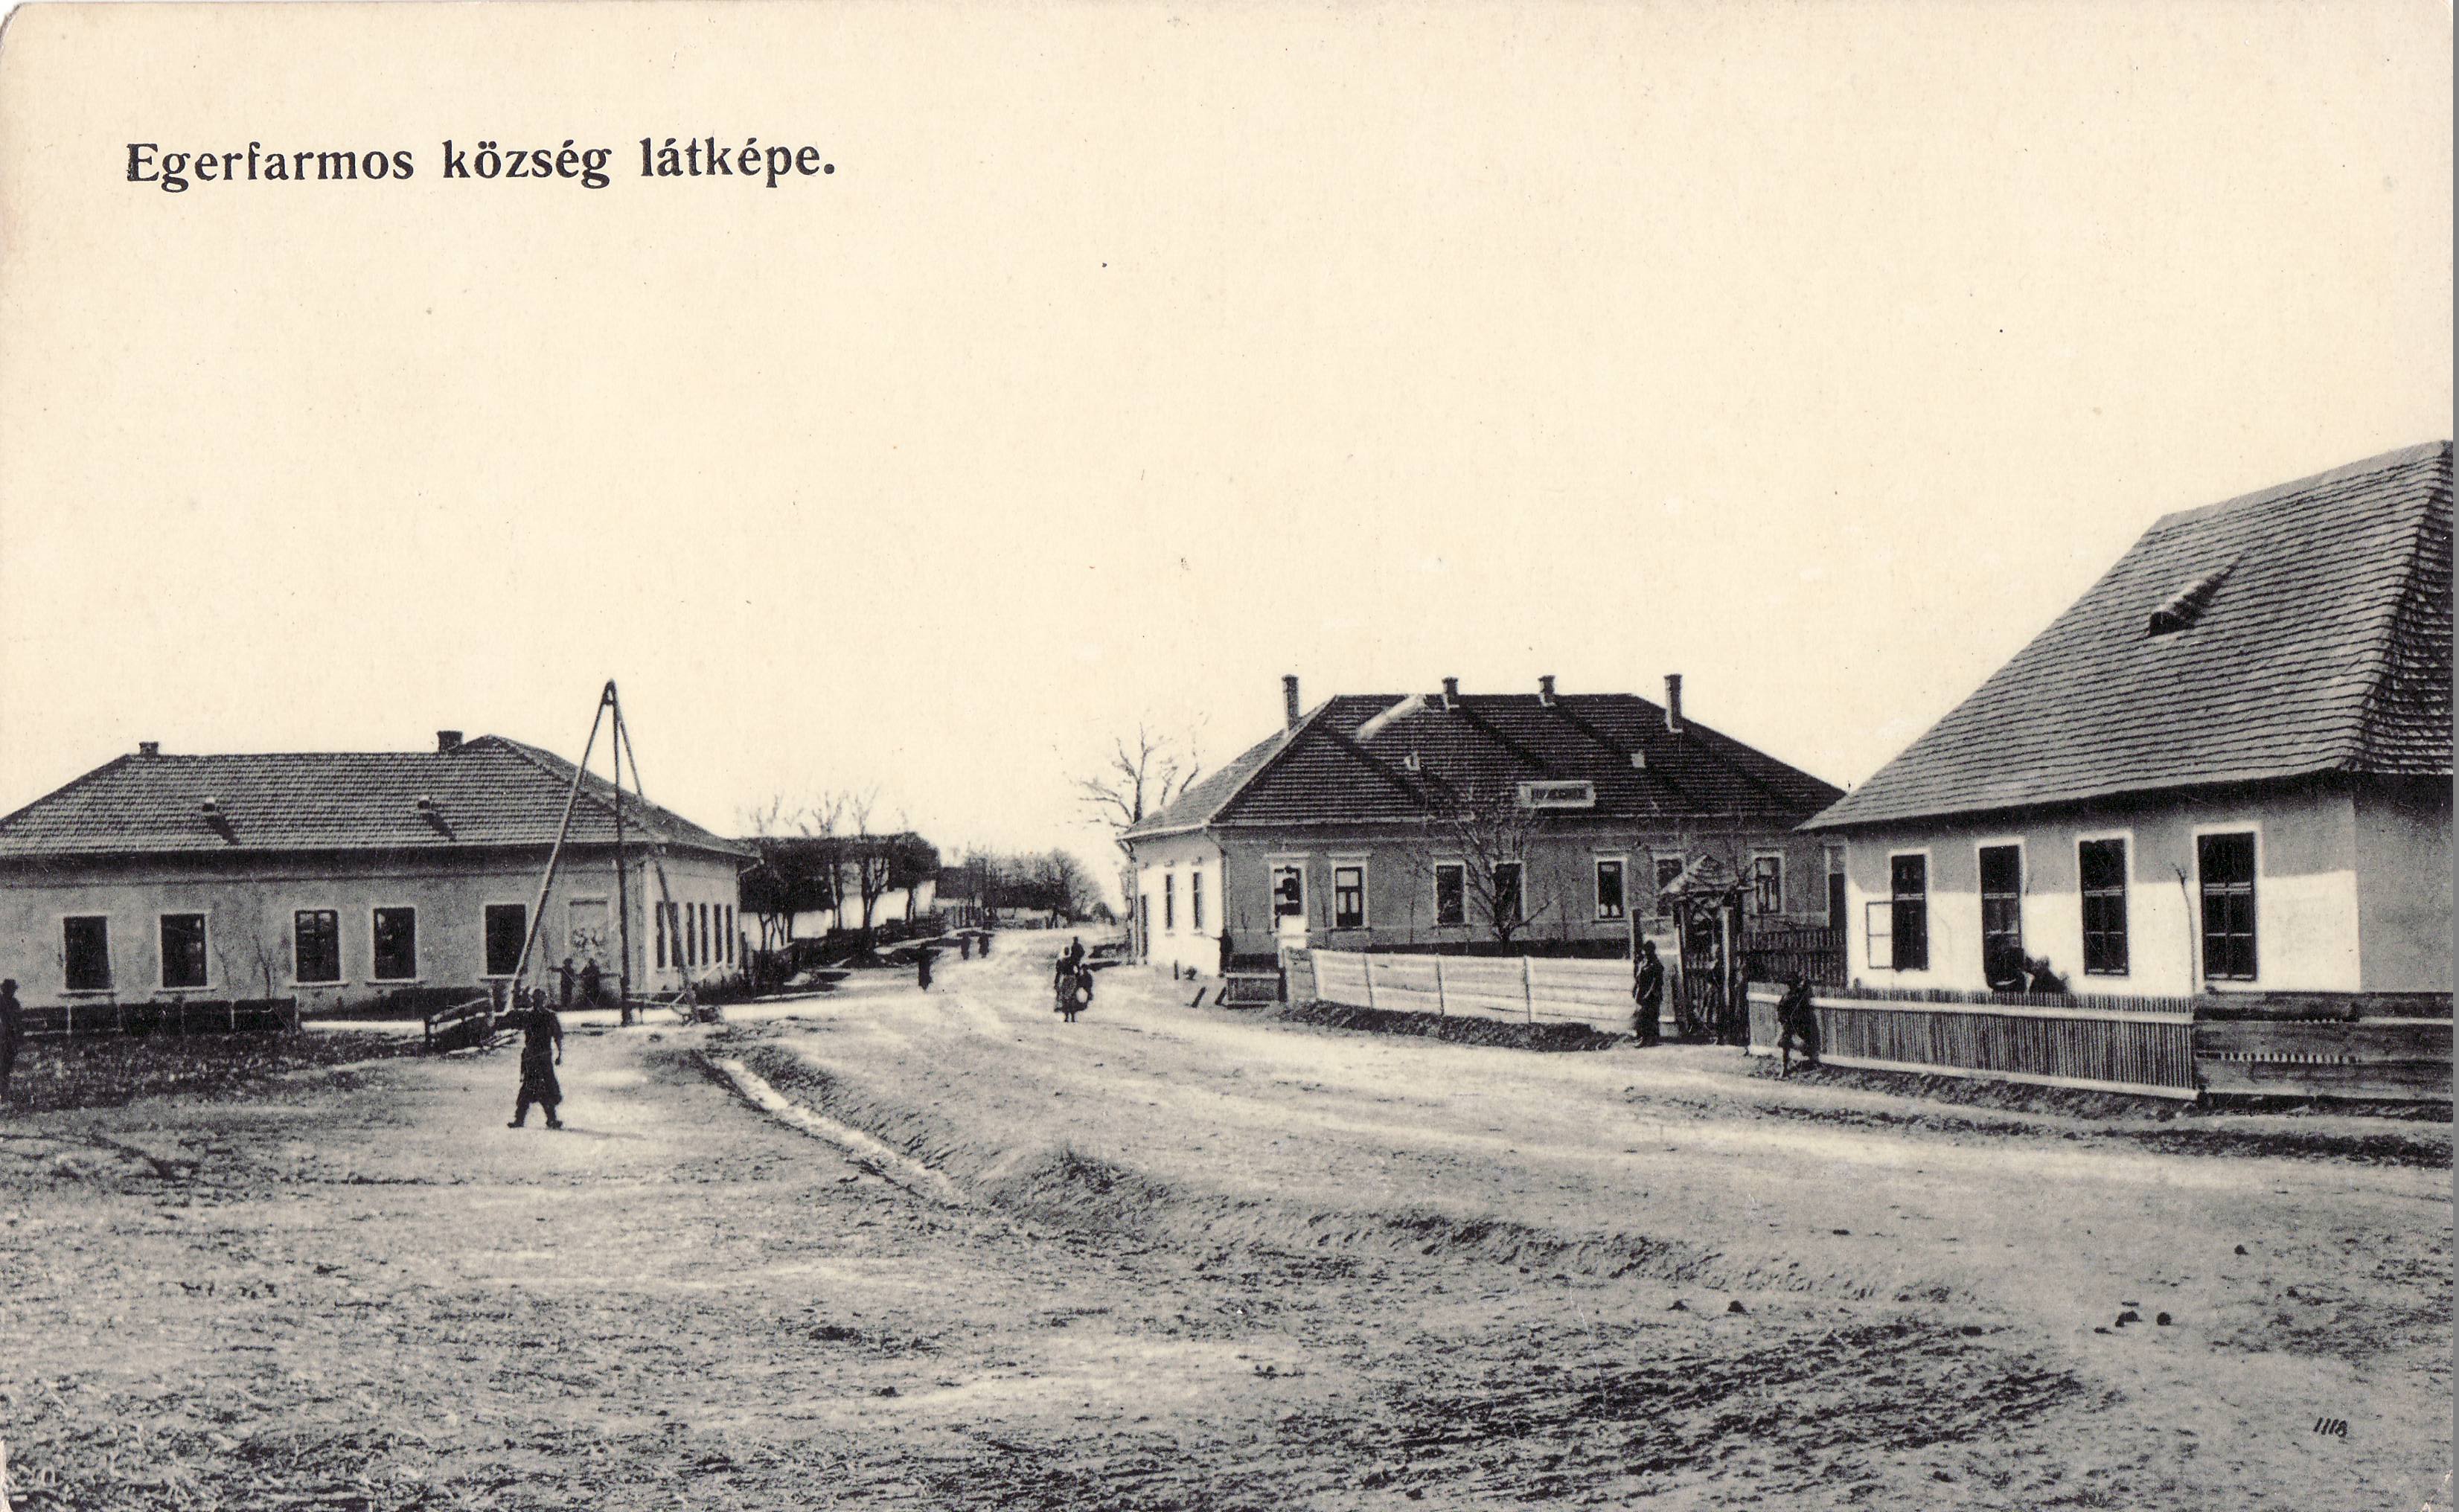 Egerfarmos község látképe (Magyar Környezetvédelmi és Vízügyi Múzeum - Duna Múzeum CC BY-NC-SA)